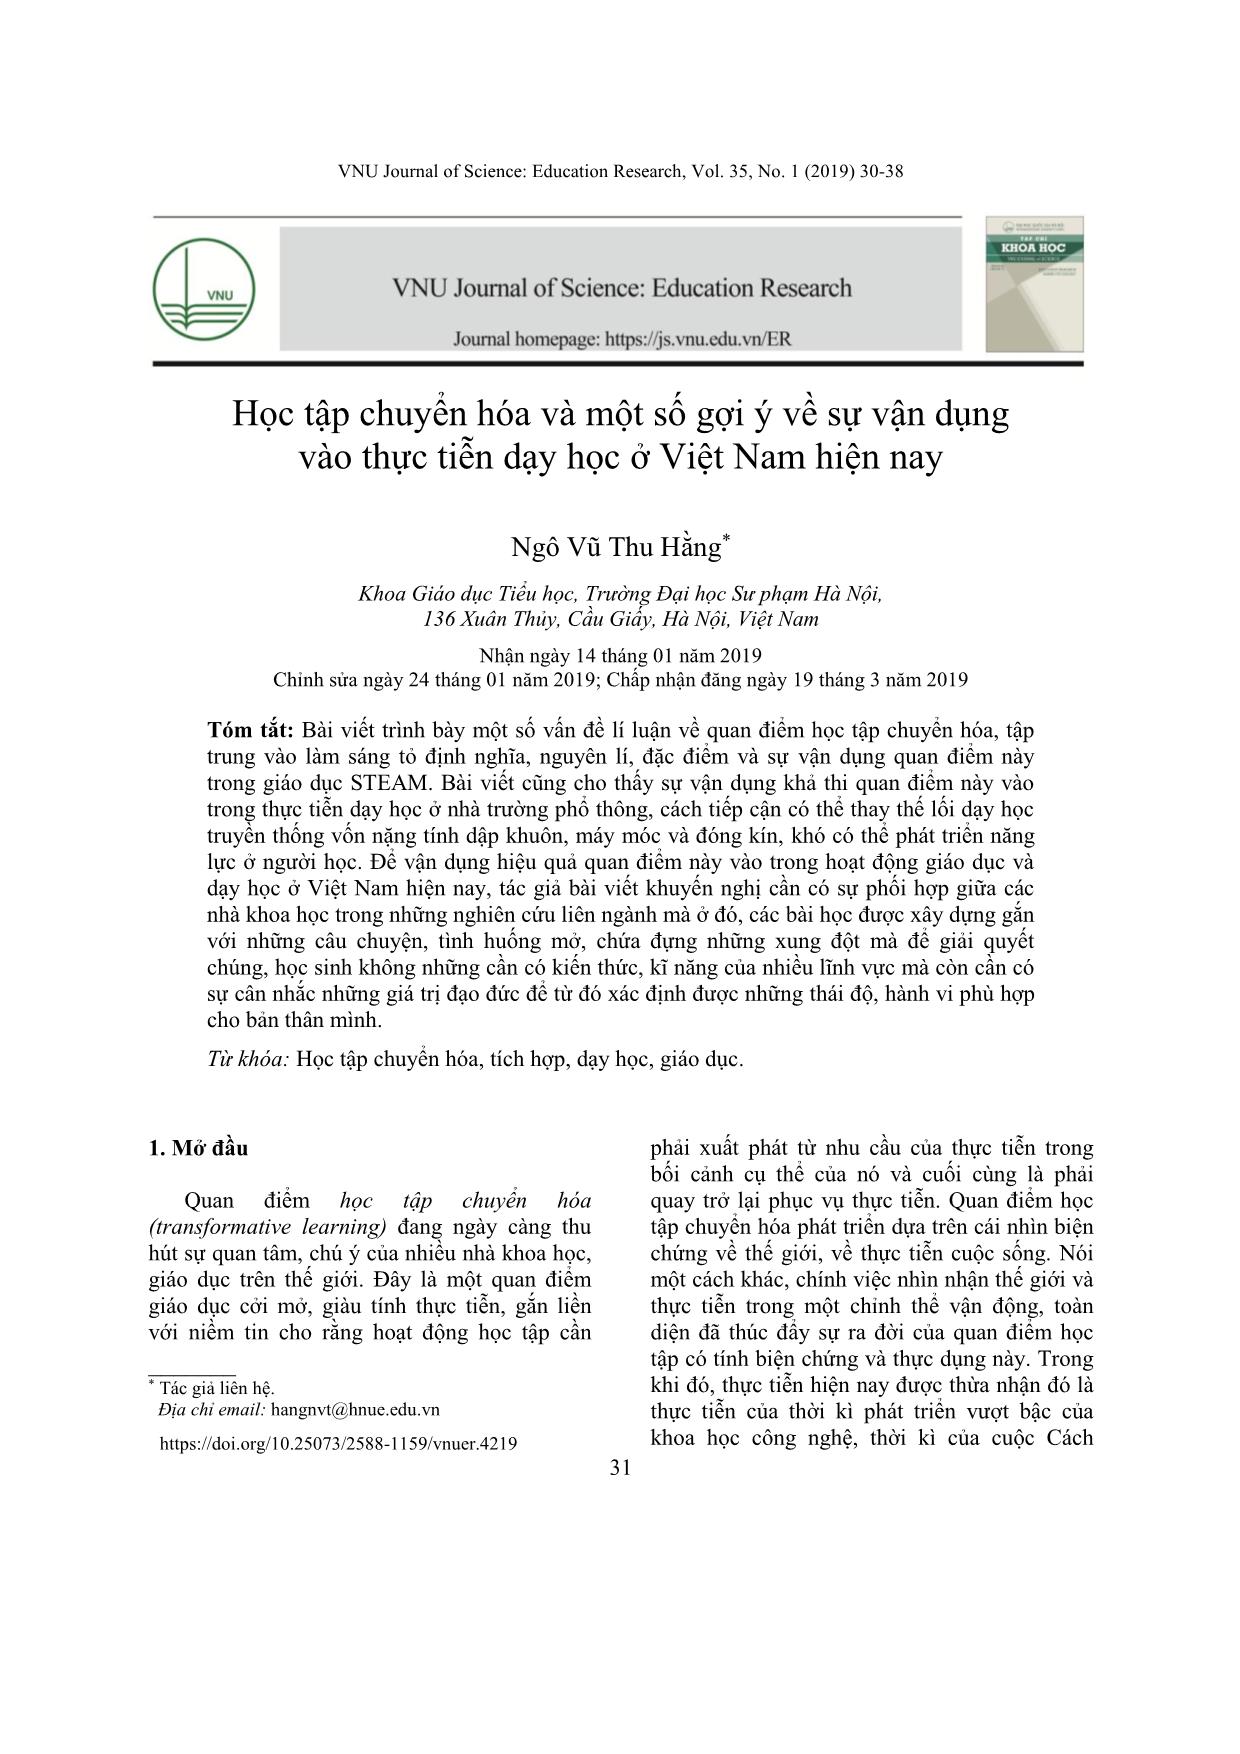 Học tập chuyển hóa và một số gợi ý về sự vận dụng vào thực tiễn dạy học ở Việt Nam hiện nay trang 2